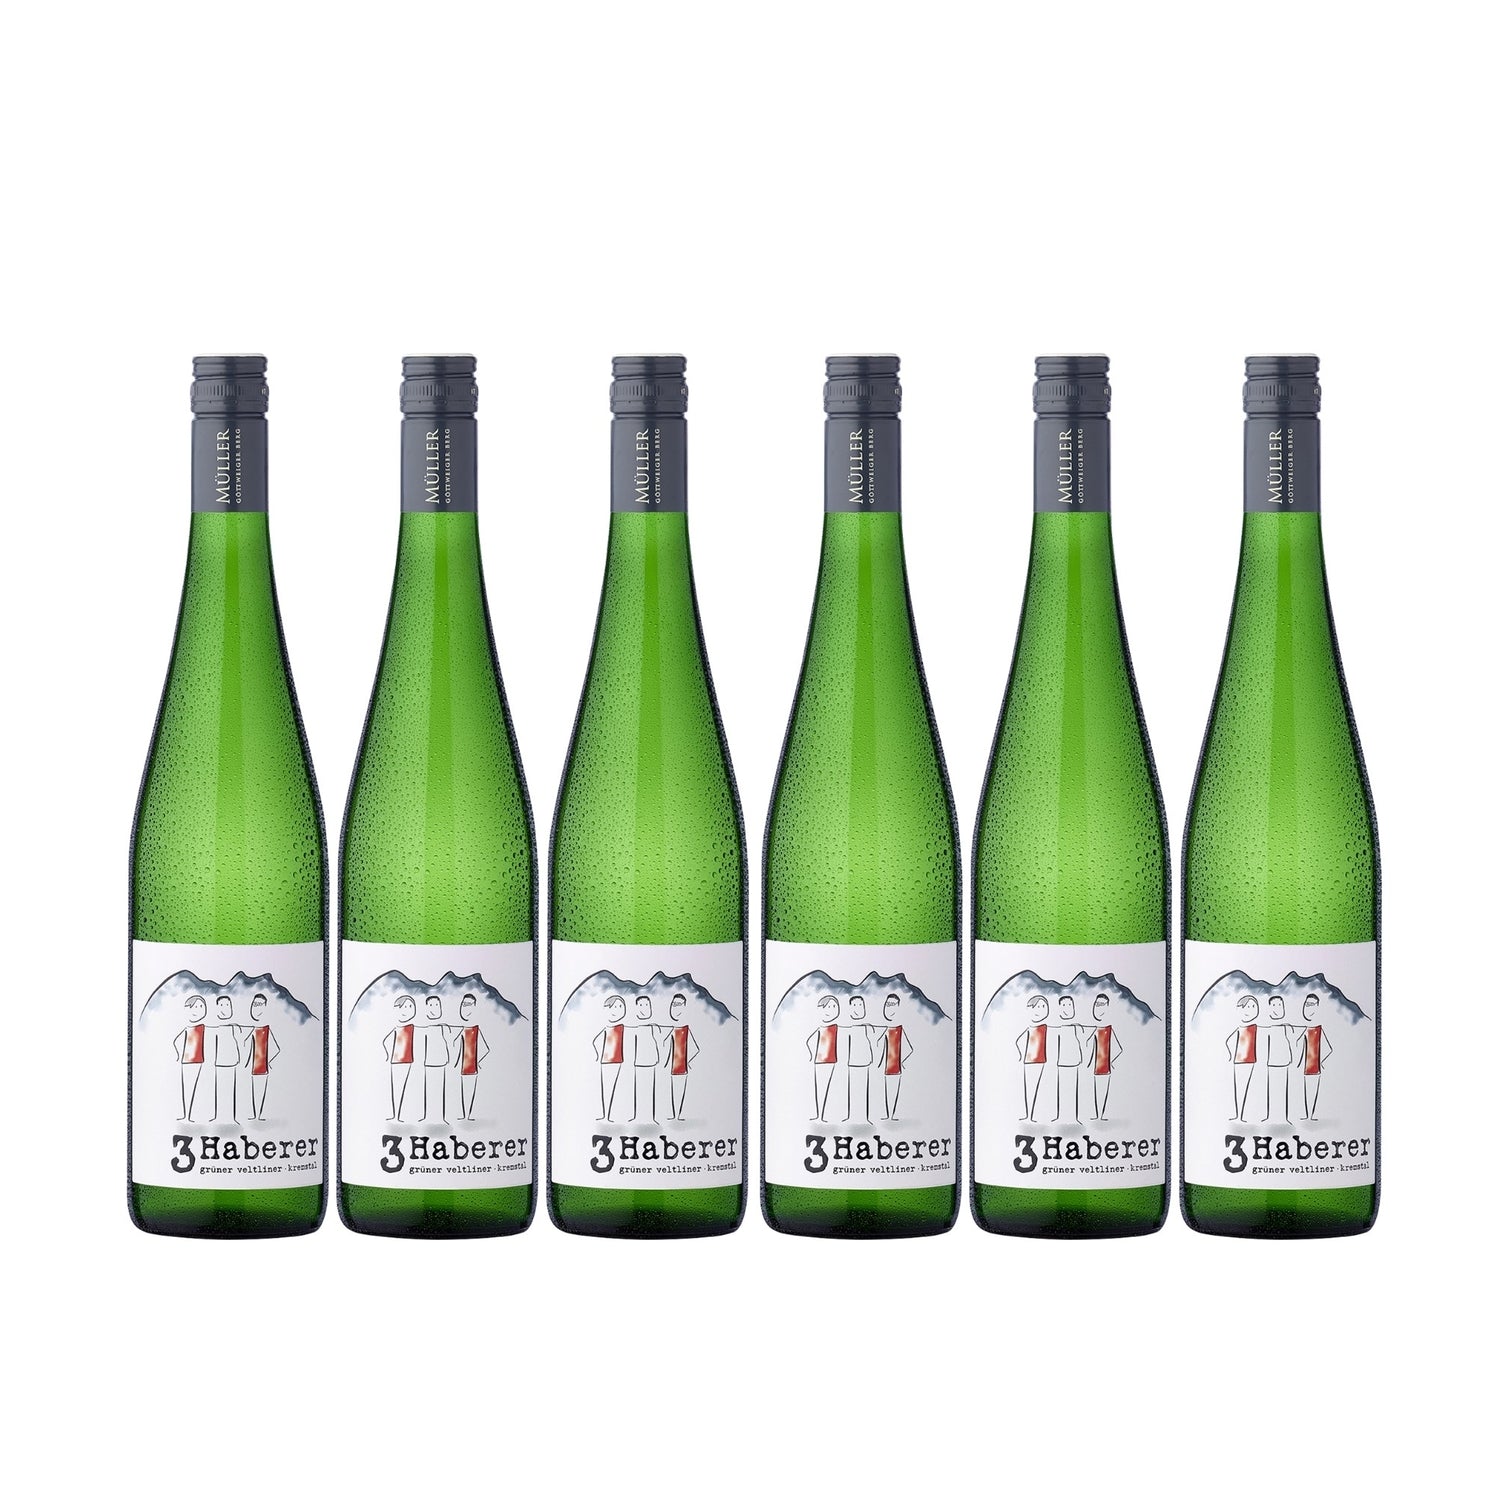 3 Haberer Grüner Veltliner Kremstal DAC Weißwein Wein trocken Österreich (6 x 0.75l) - Versanel - Wein